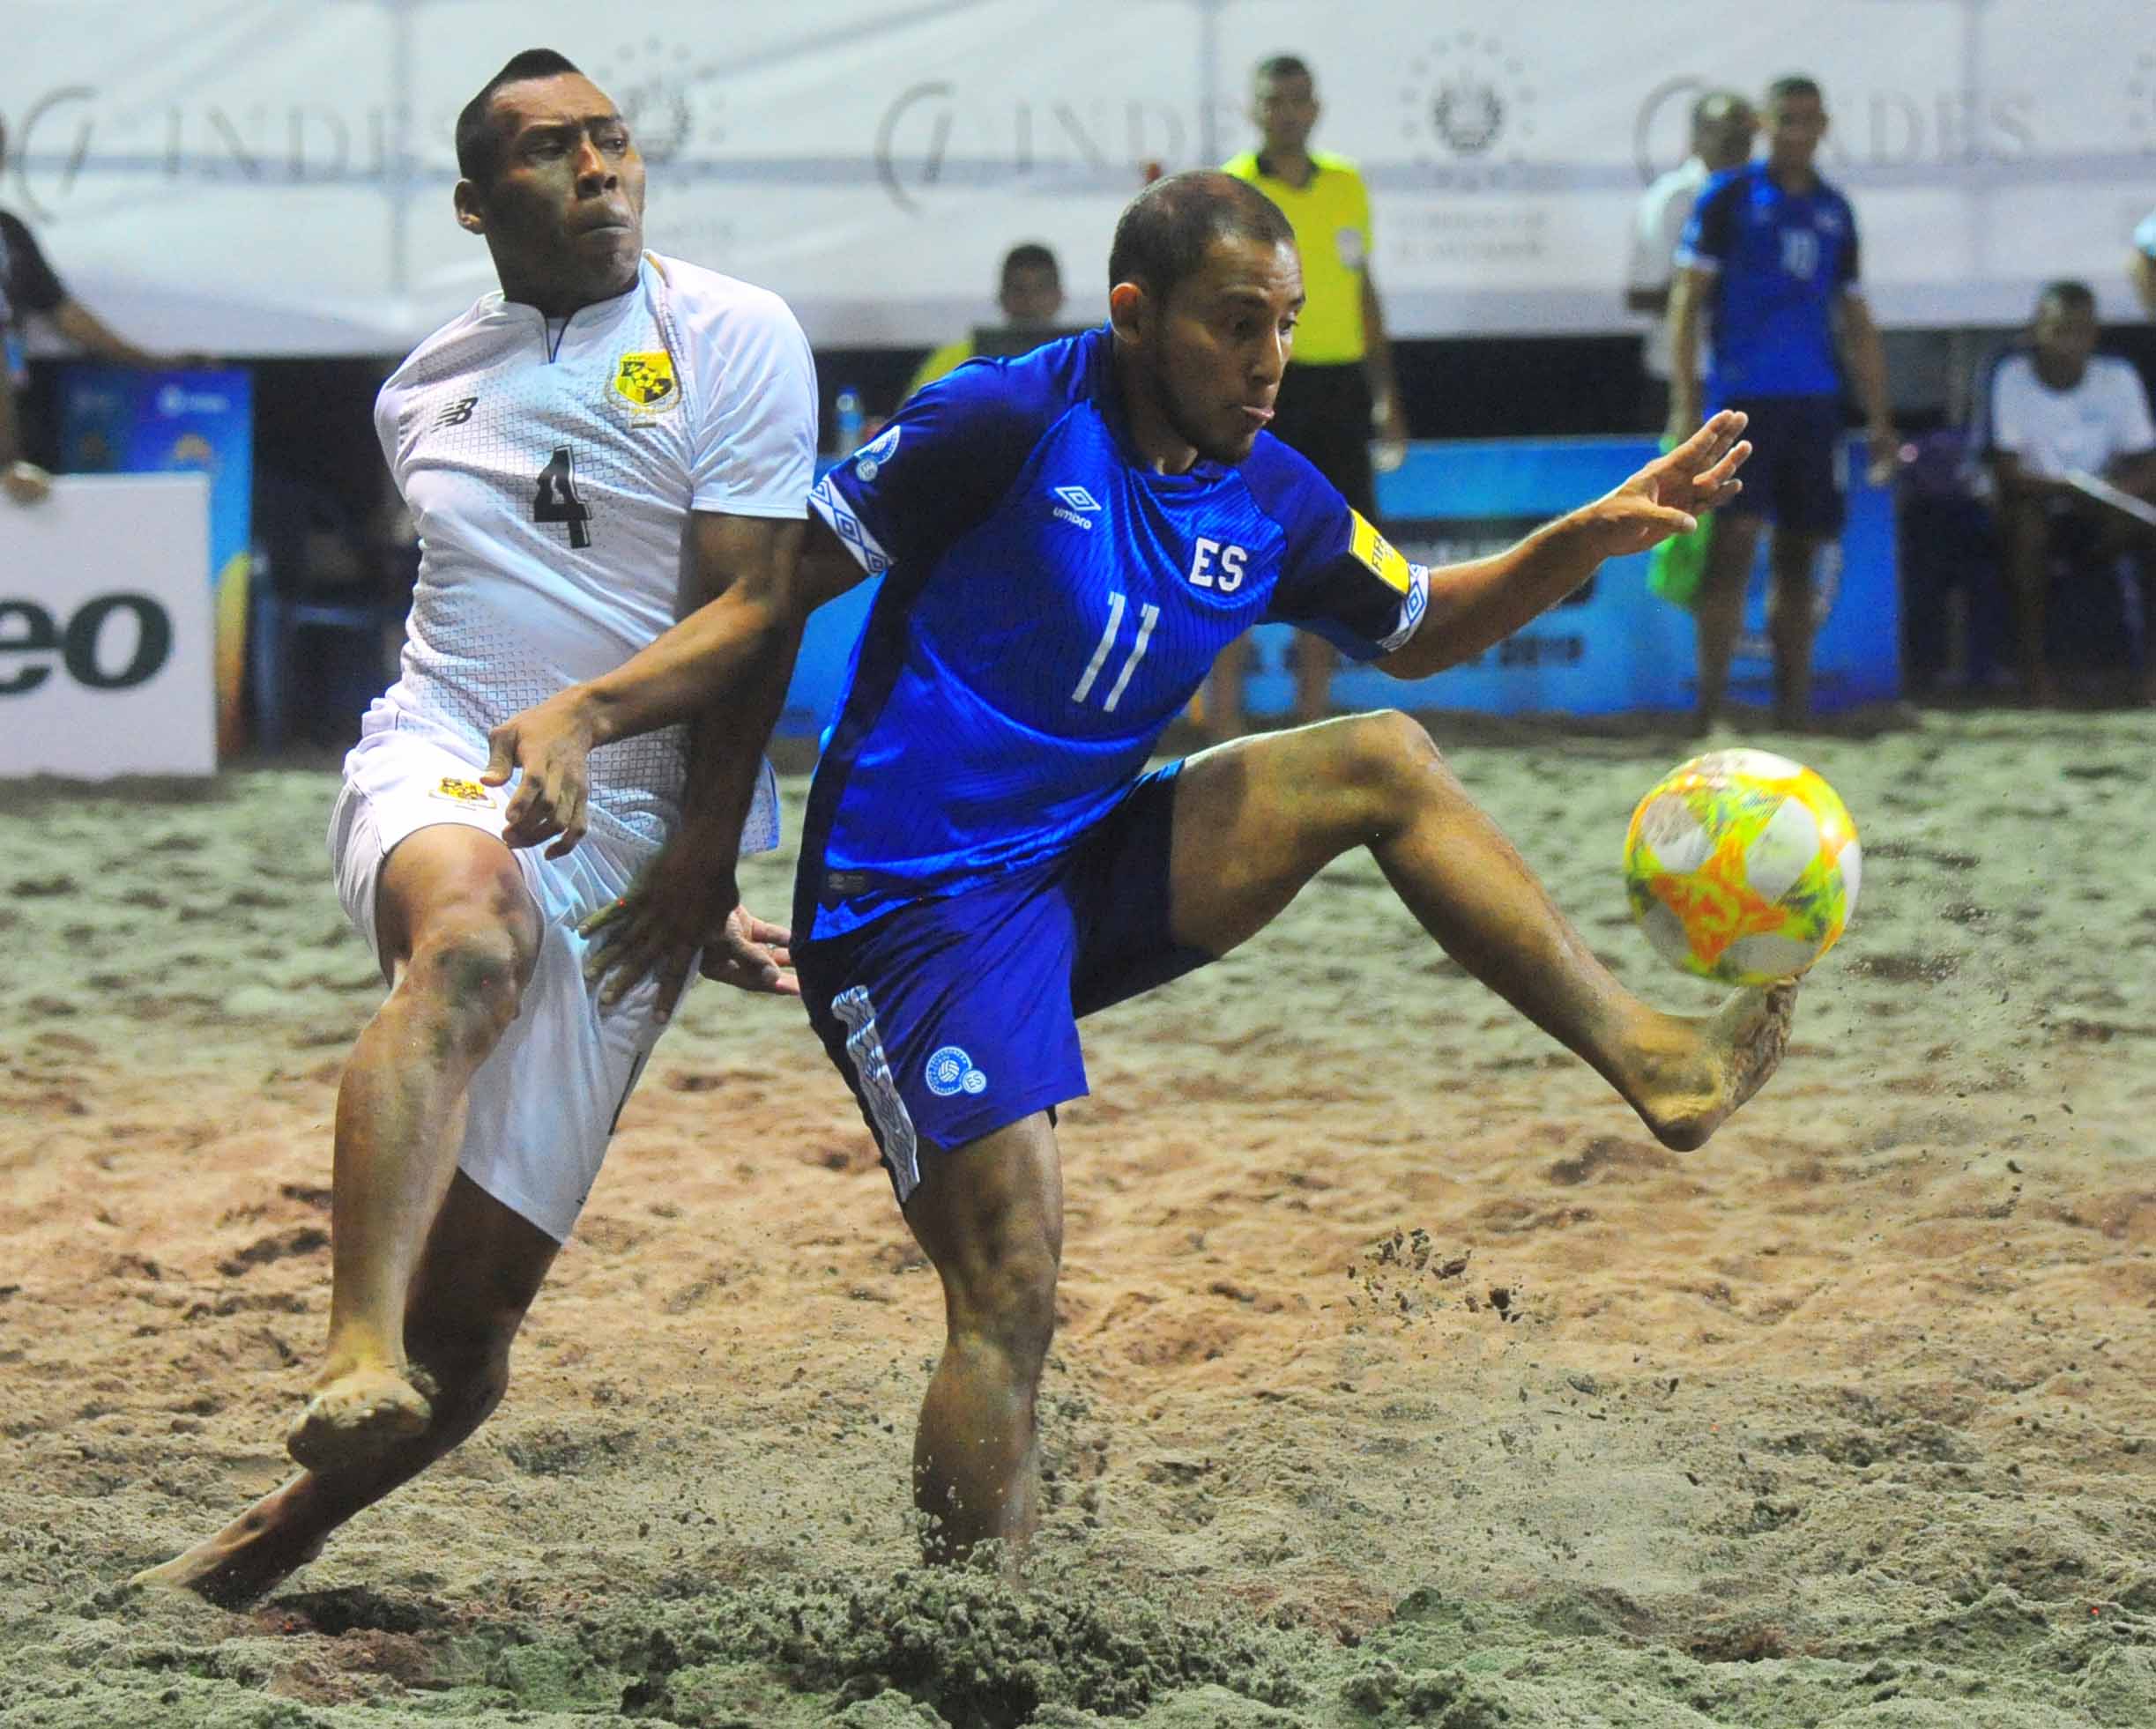 Selecciones de fútbol playa listas para los partidos El Salvador Beach  Soccer Cup 2022 - Noticias La Gaceta